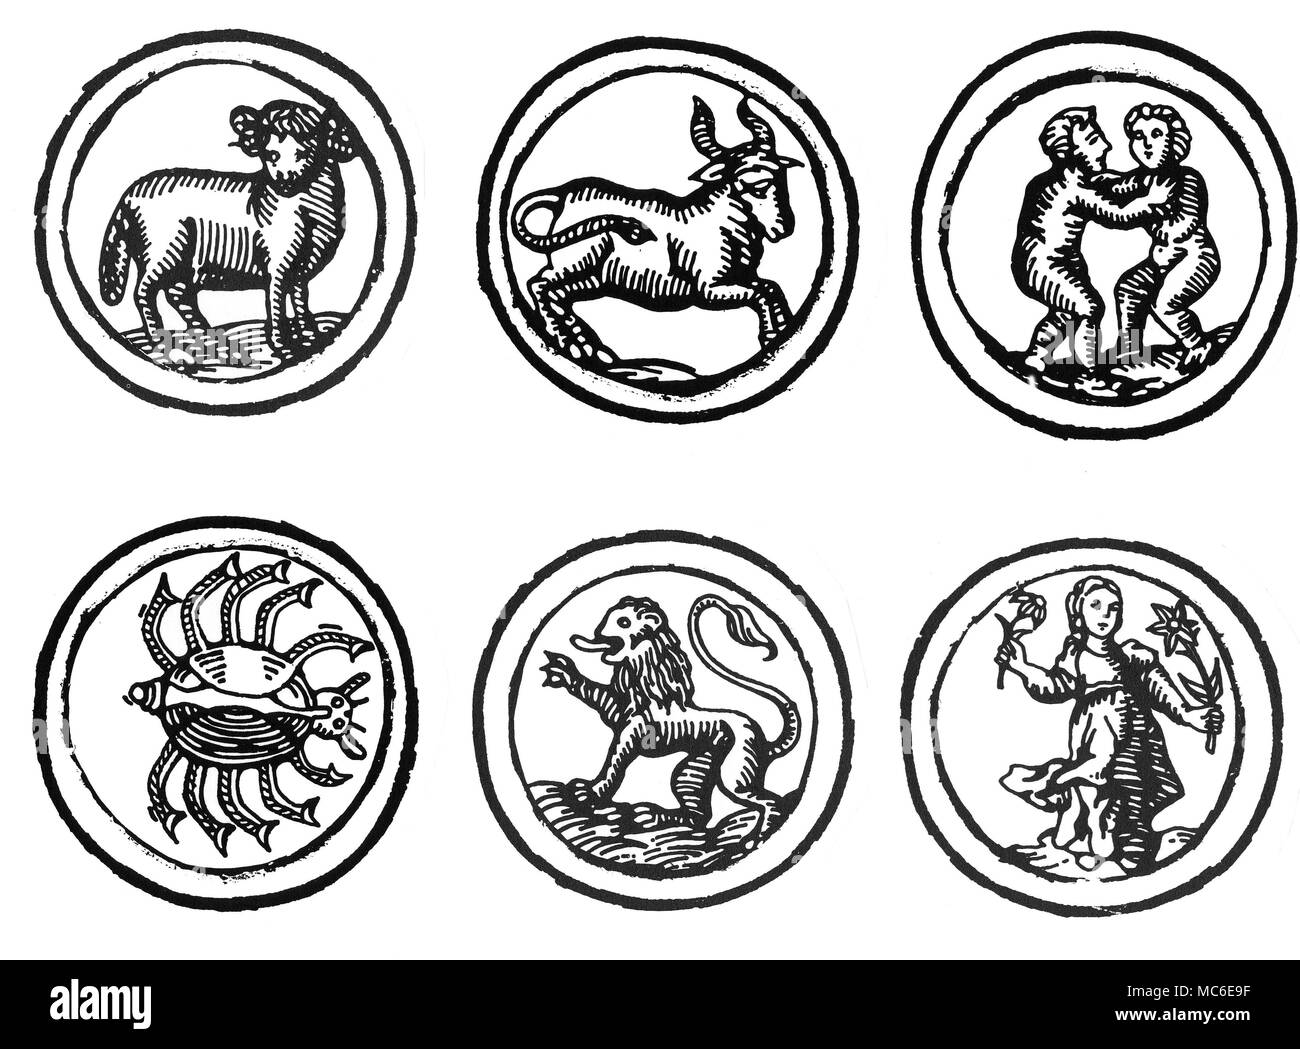 Astrologie - ZODIAQUES Six images des douze signes du zodiac - Bélier, Taureau, Gémeaux, Cancer, Lion et Vierge (images des six autres sont disponibles). D'un berger allemand Calendrier de 1520. Banque D'Images